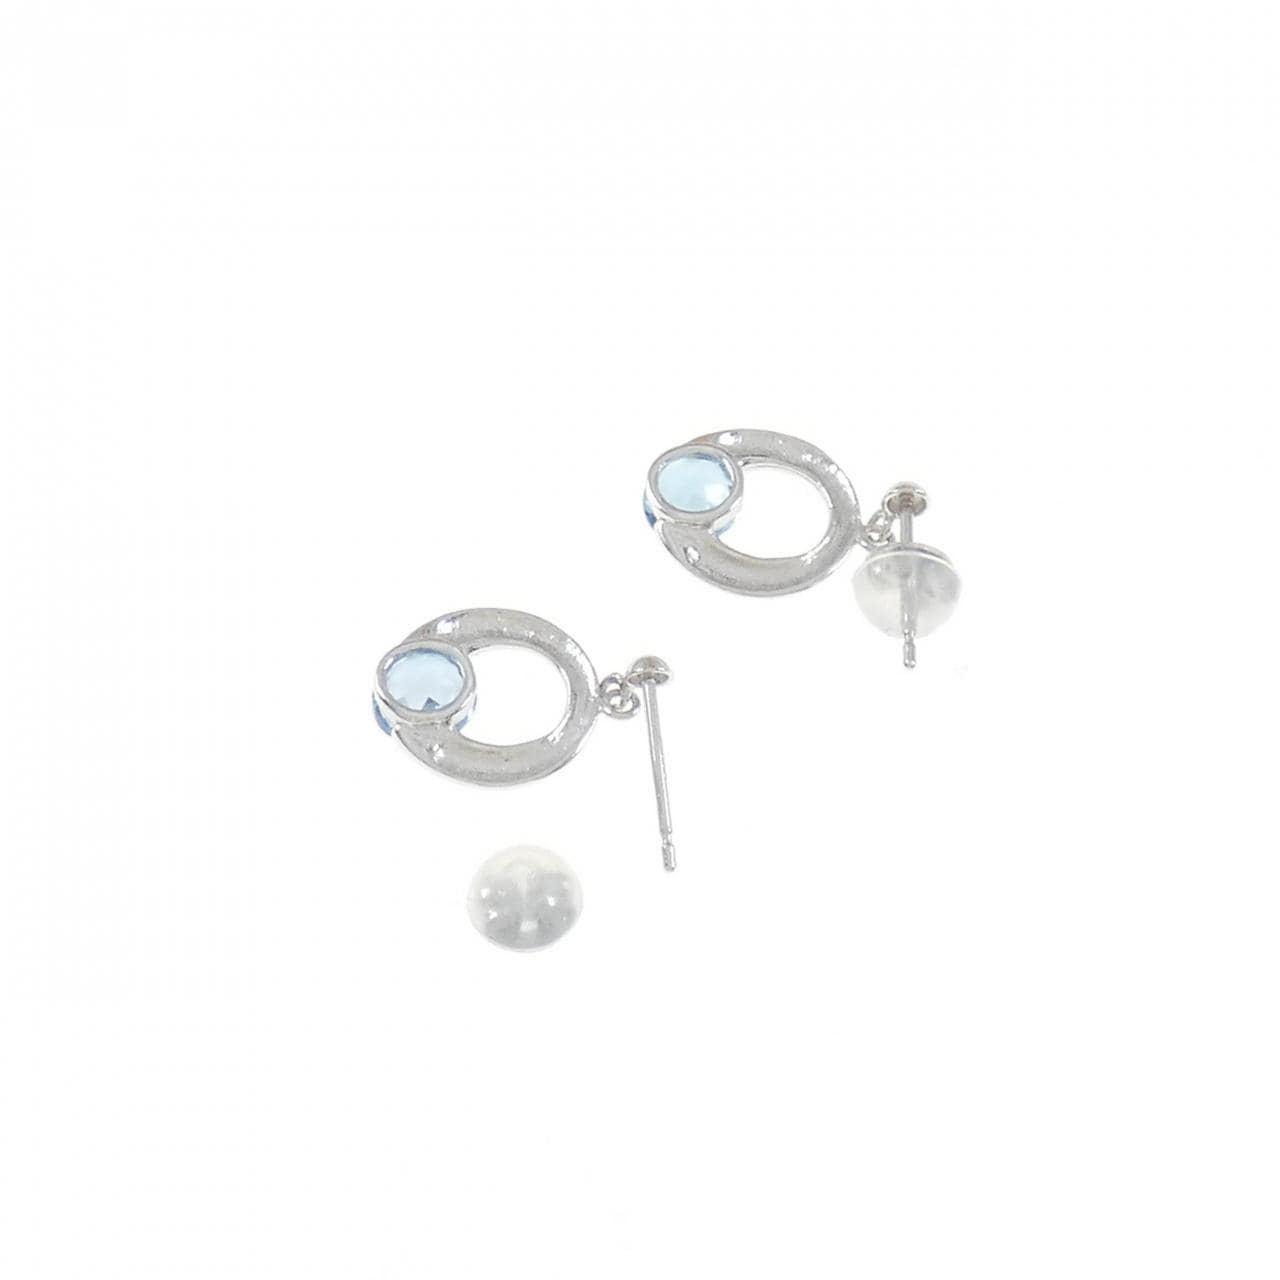 PT blue Topaz earrings